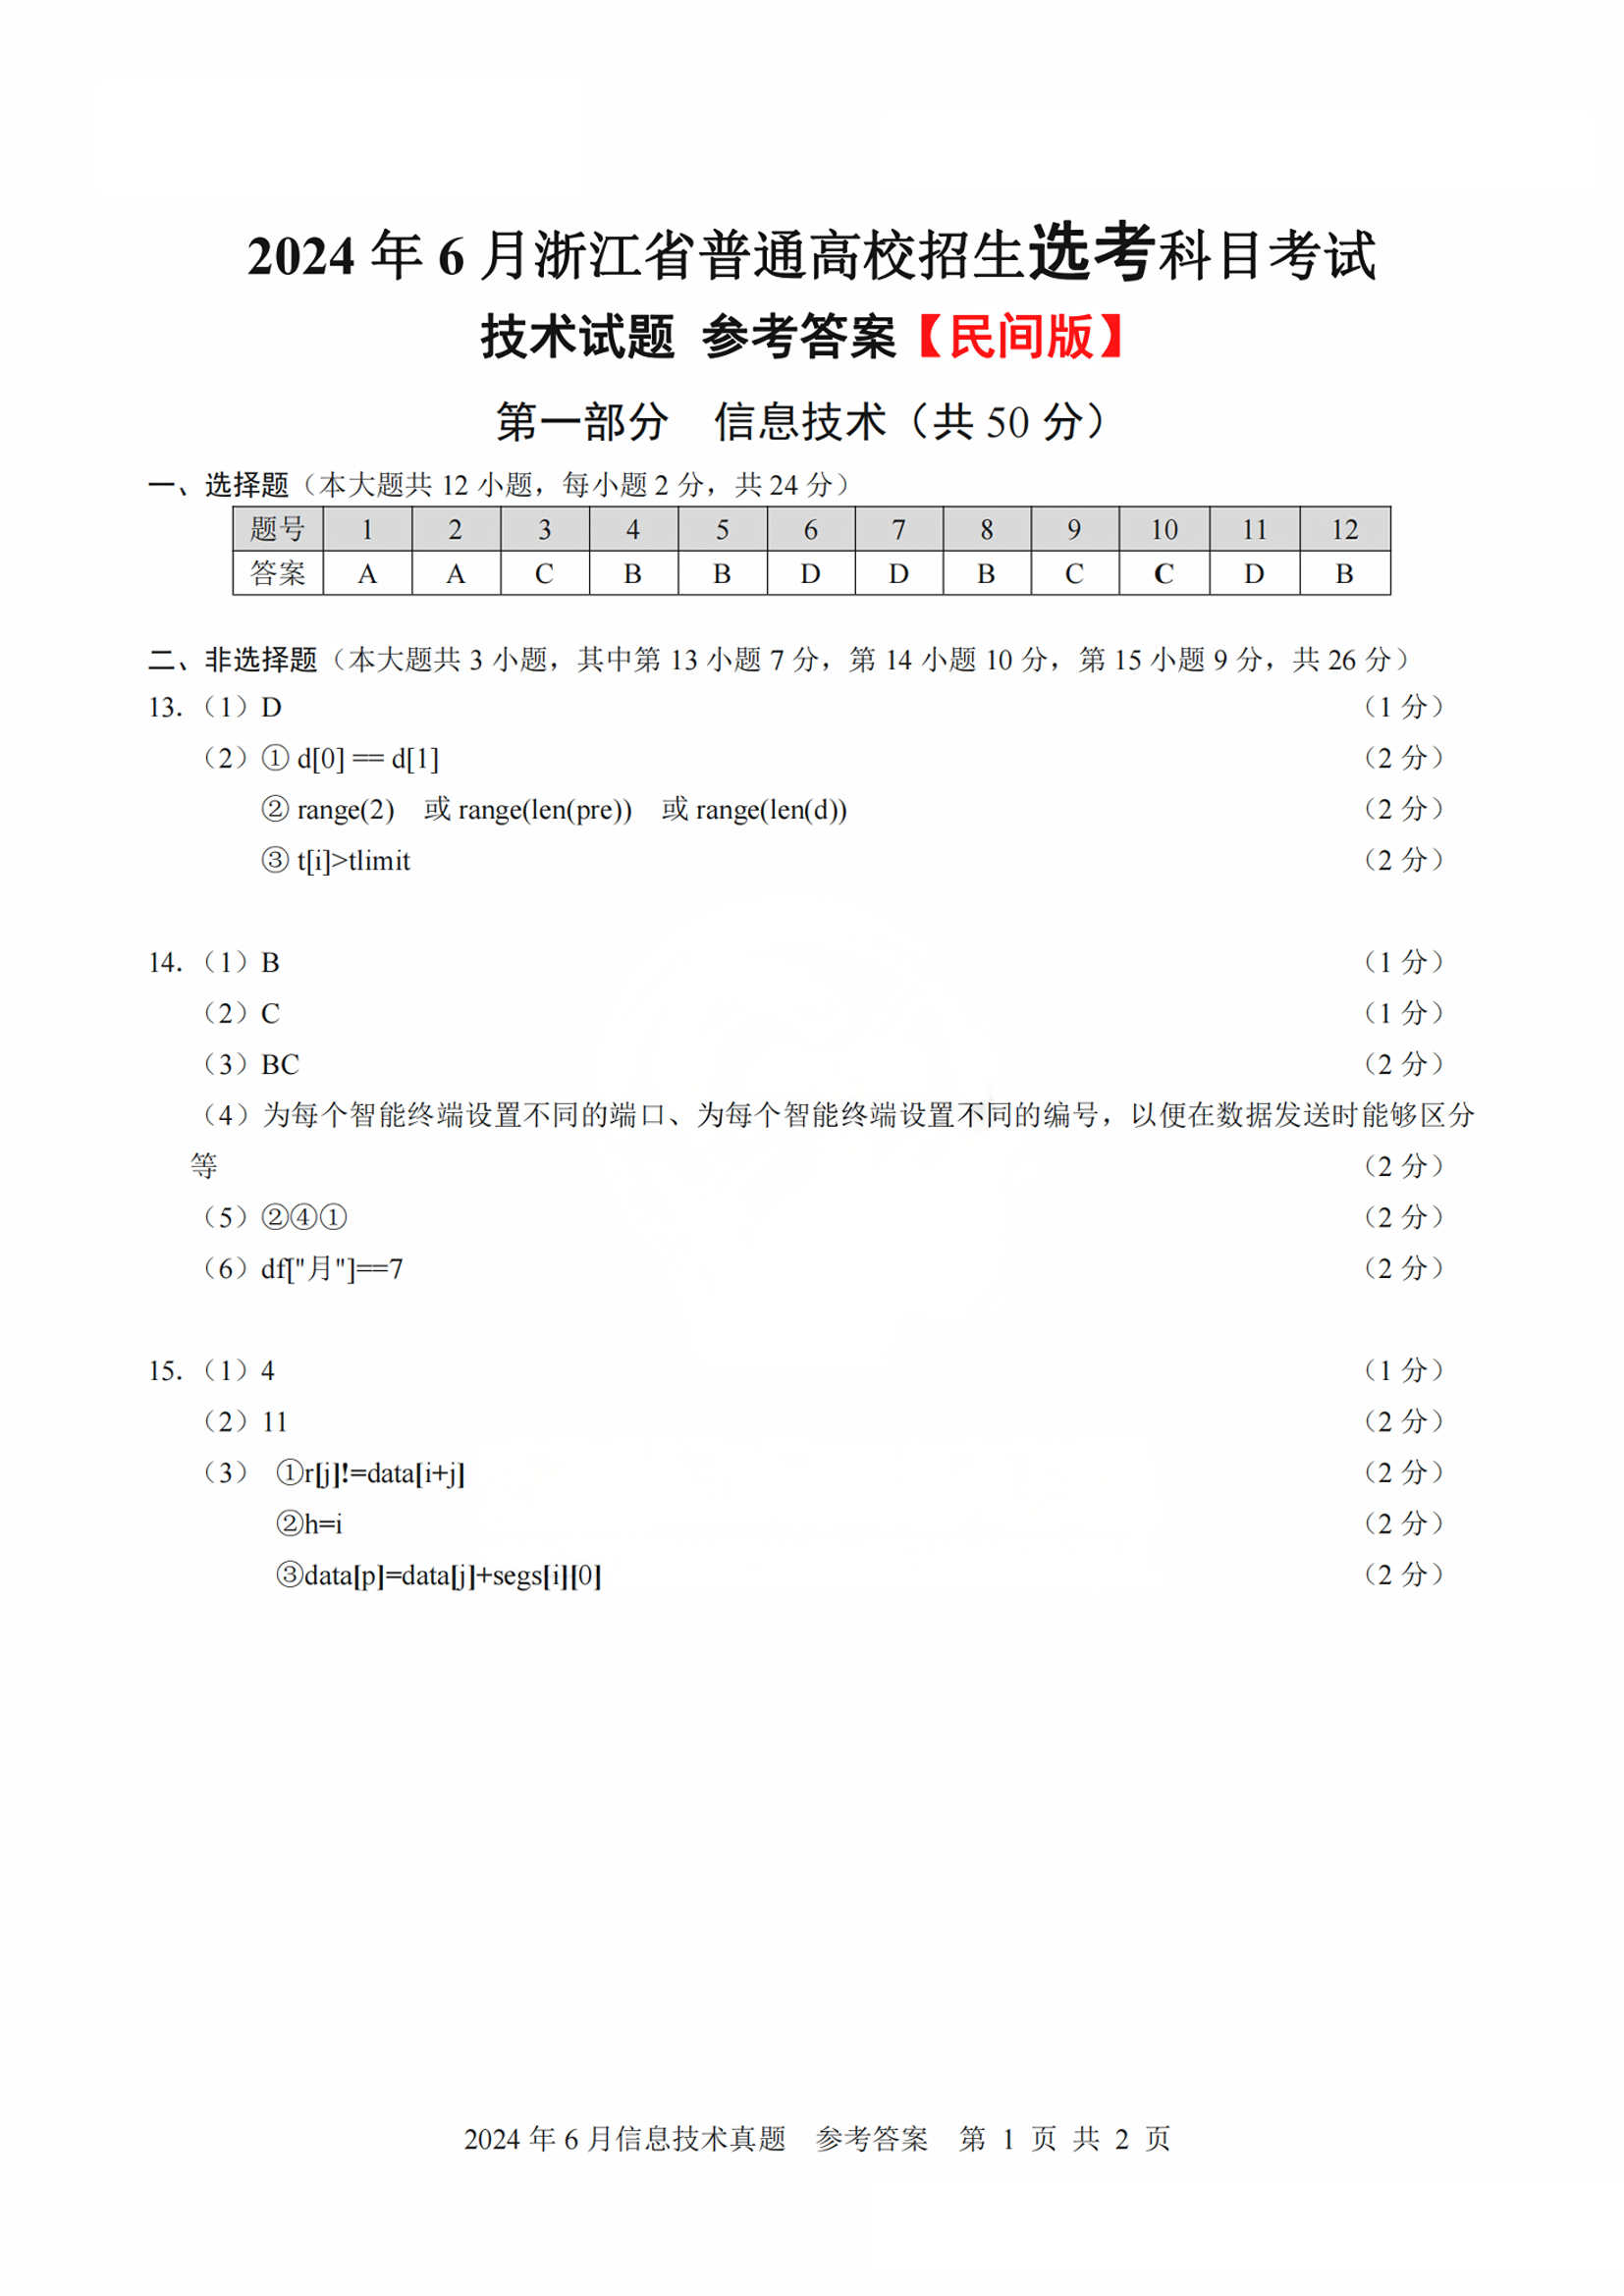 浙江省2024年高考试题及答案汇总